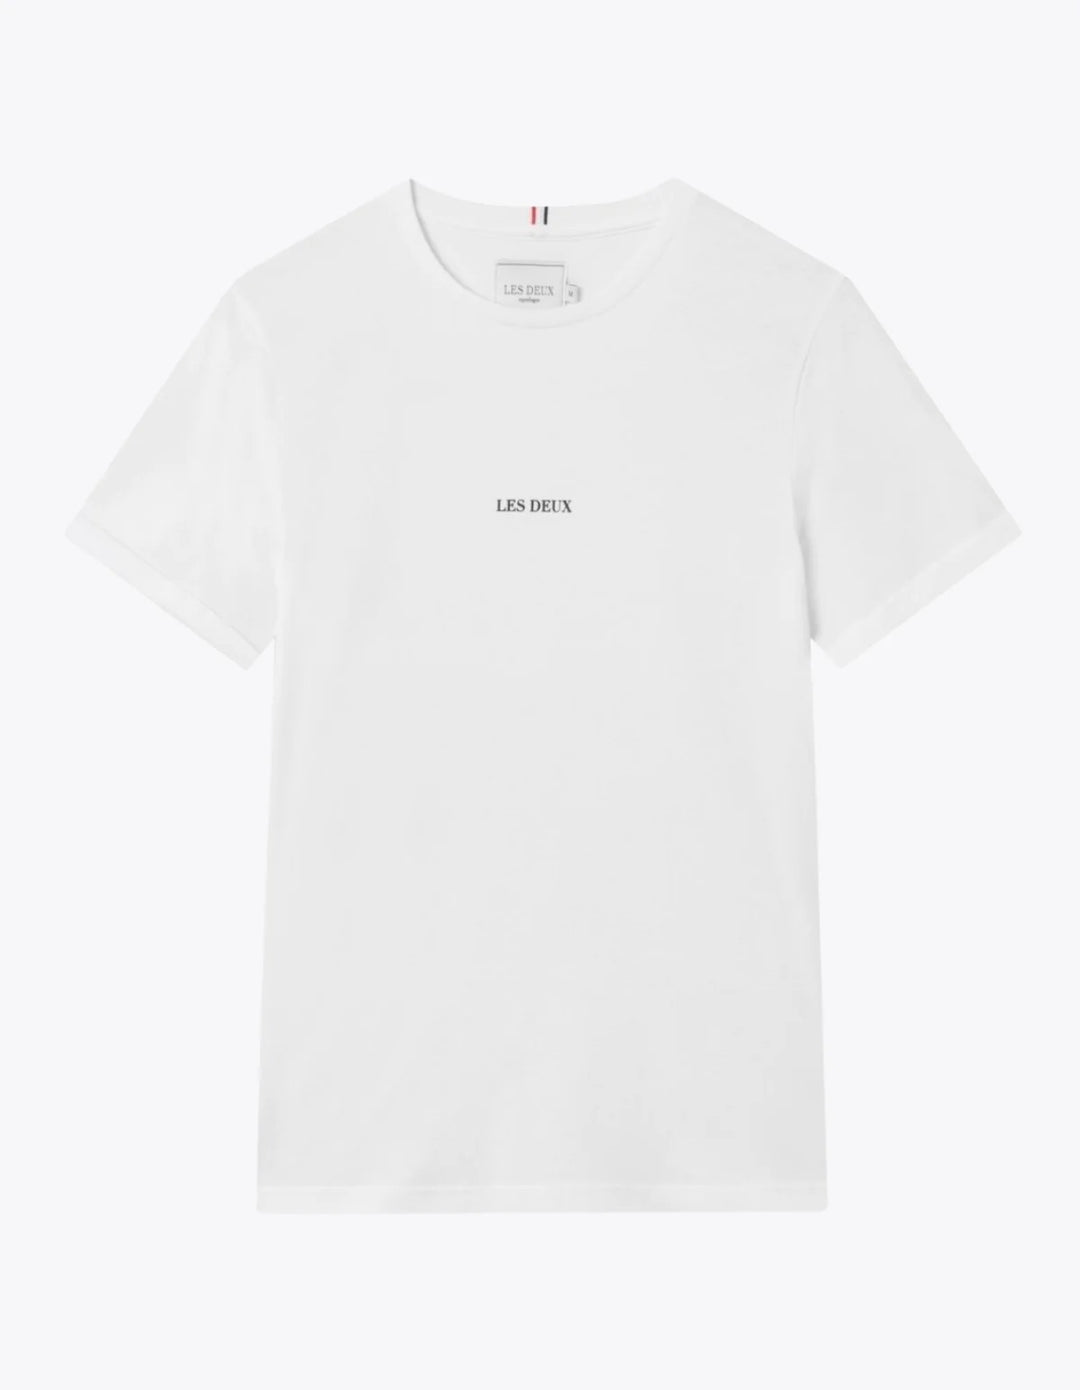 Lens T-Shirt  White/Black